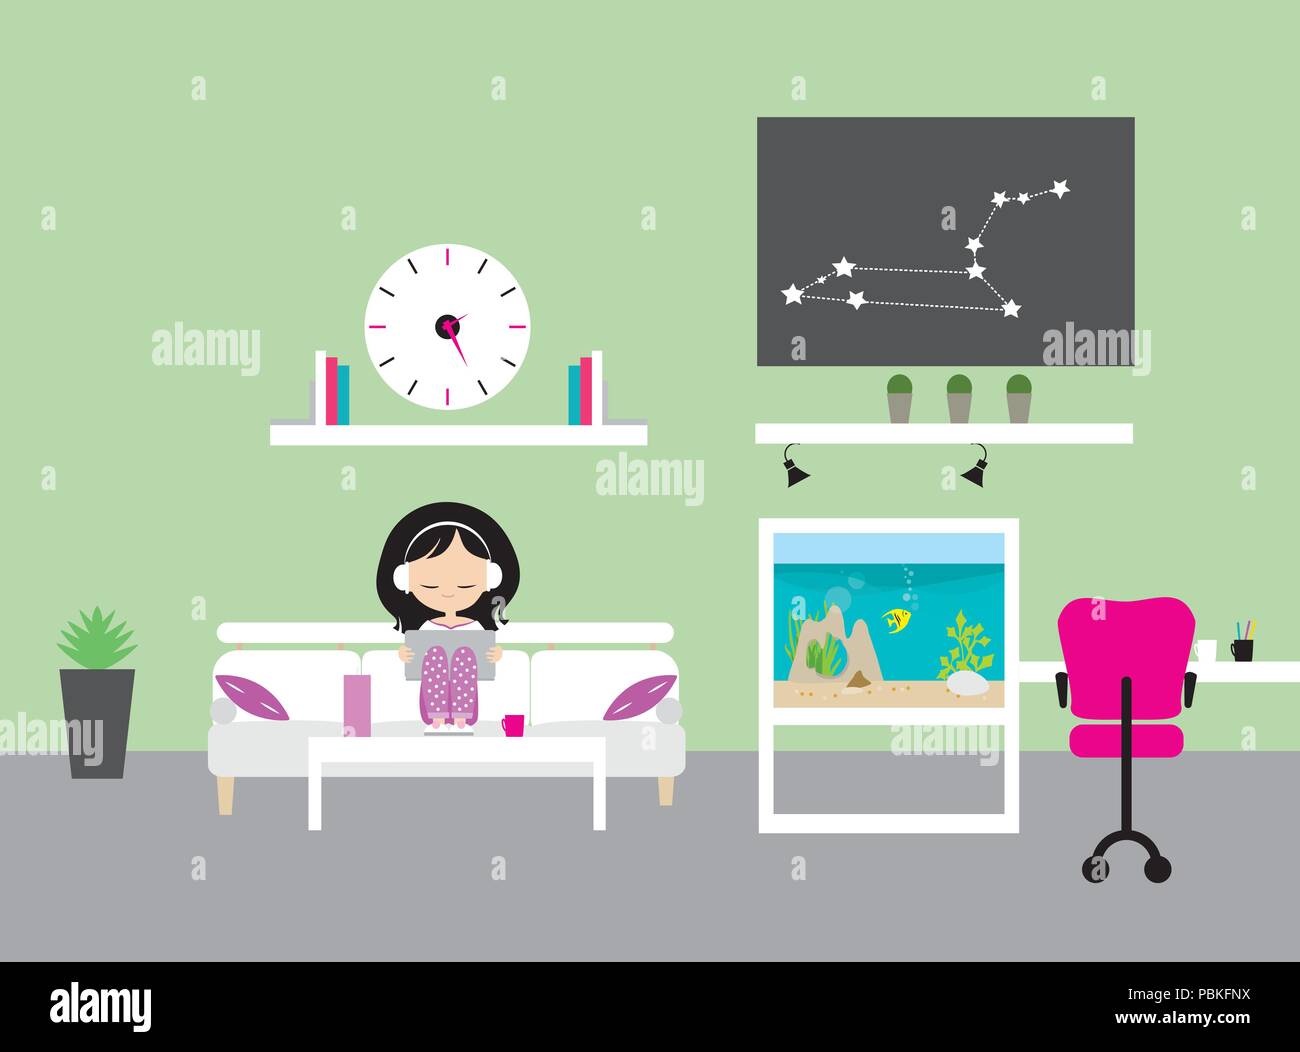 Junges Mädchen mit Kopfhörern und Laptop in ein Kinderzimmer mit grünen Wänden, Aquarium und Tisch, Stühlen und Lautsprecher - Vektor, flache Bauform Stock Vektor